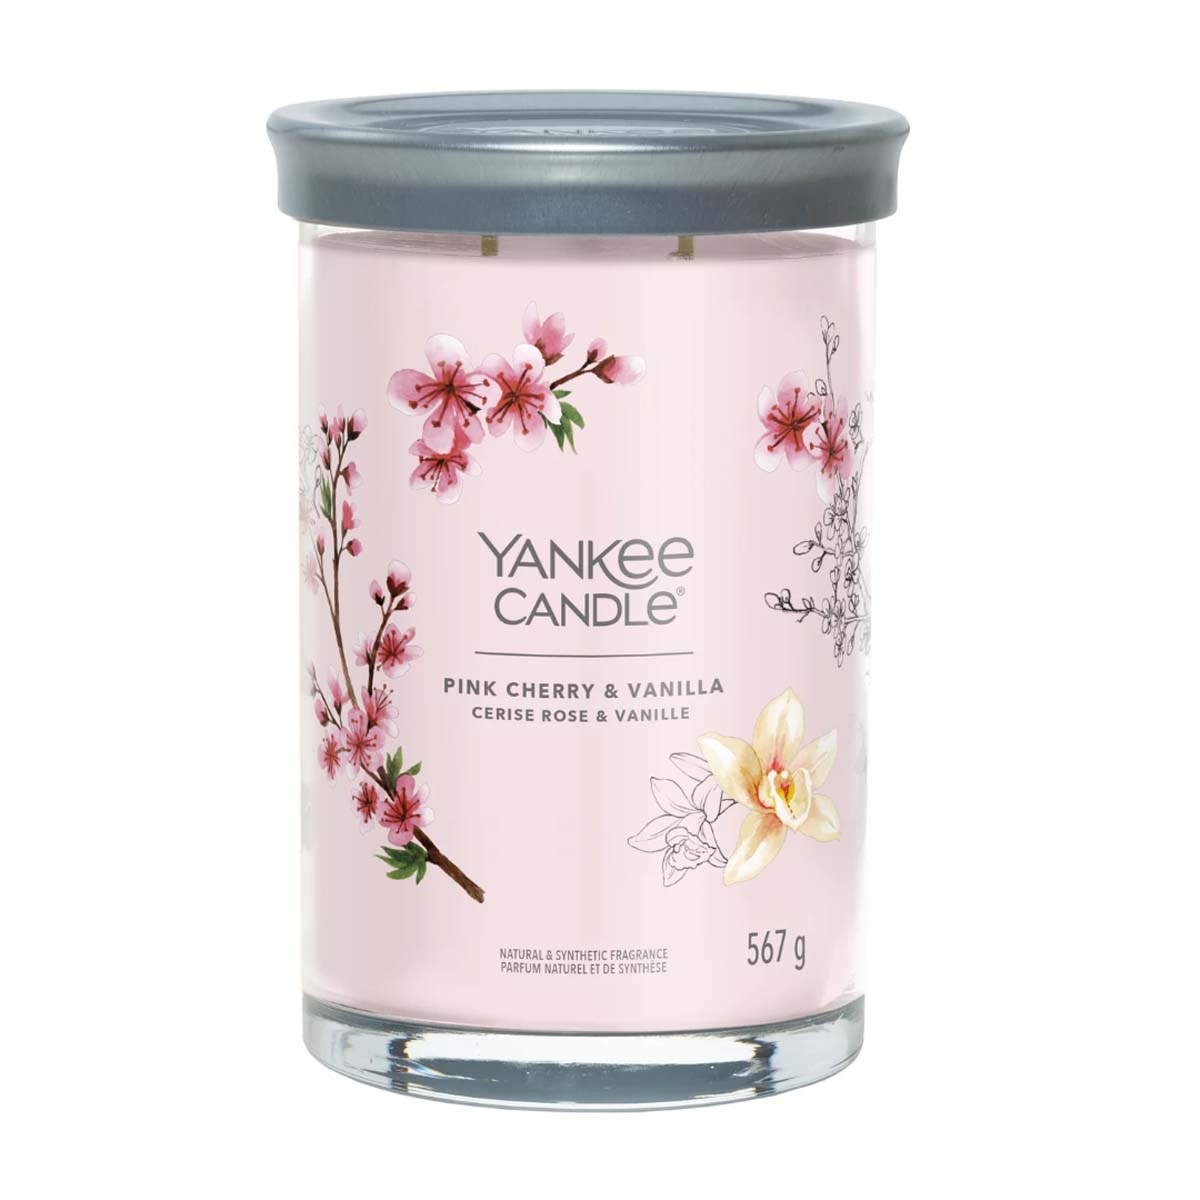 Yankee Candle Signature Linea Pink Cherry & Vanilla – Festa della Mamma